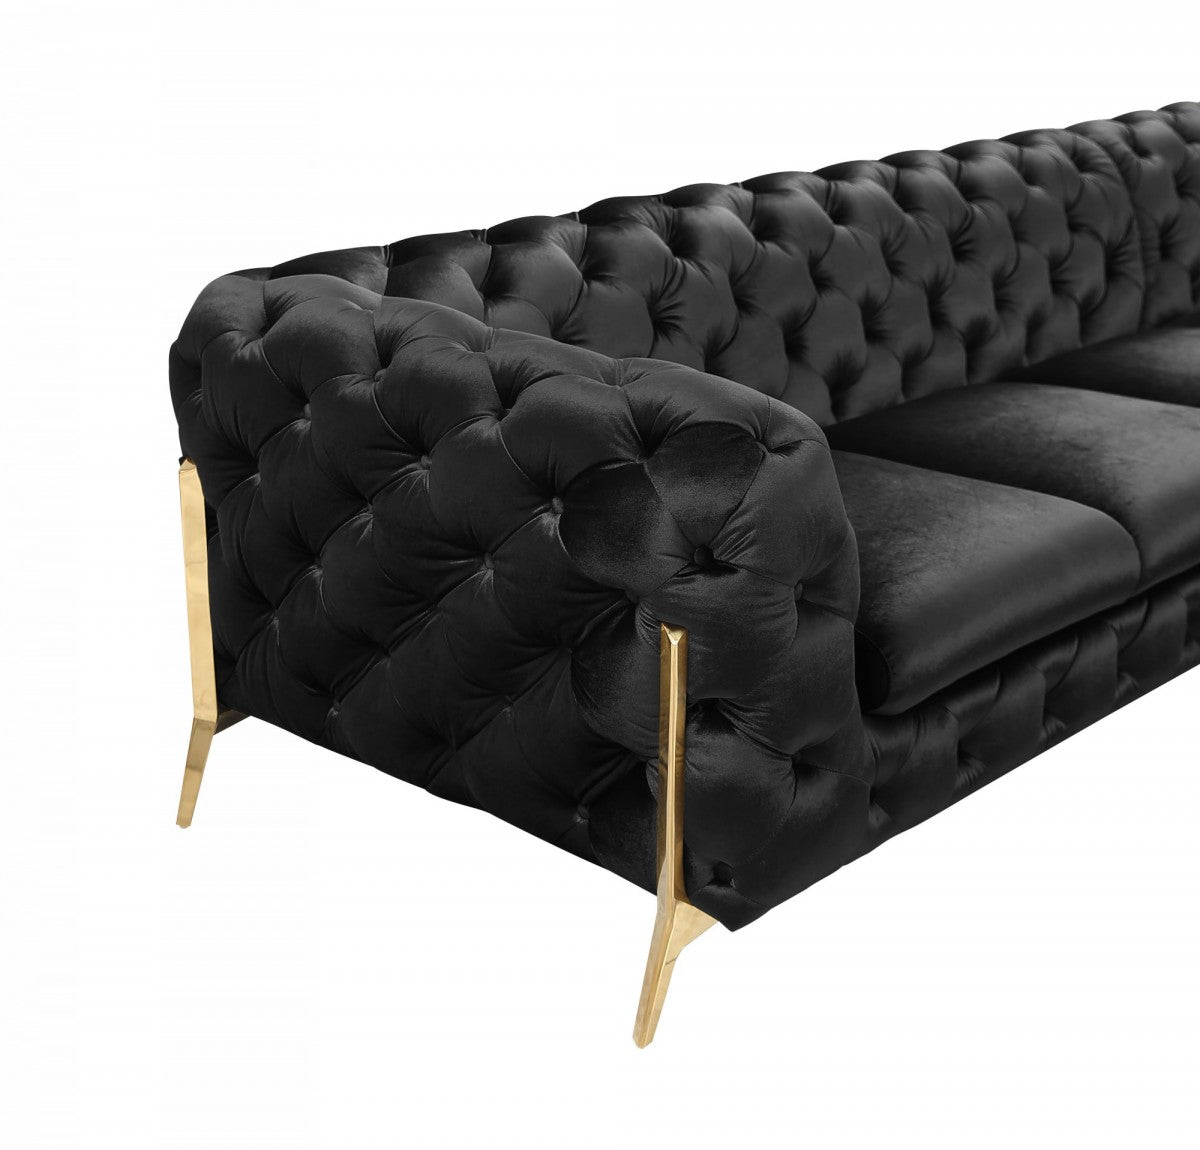 Divani Casa Sheila - Modern Black Velvet Sectional Sofa